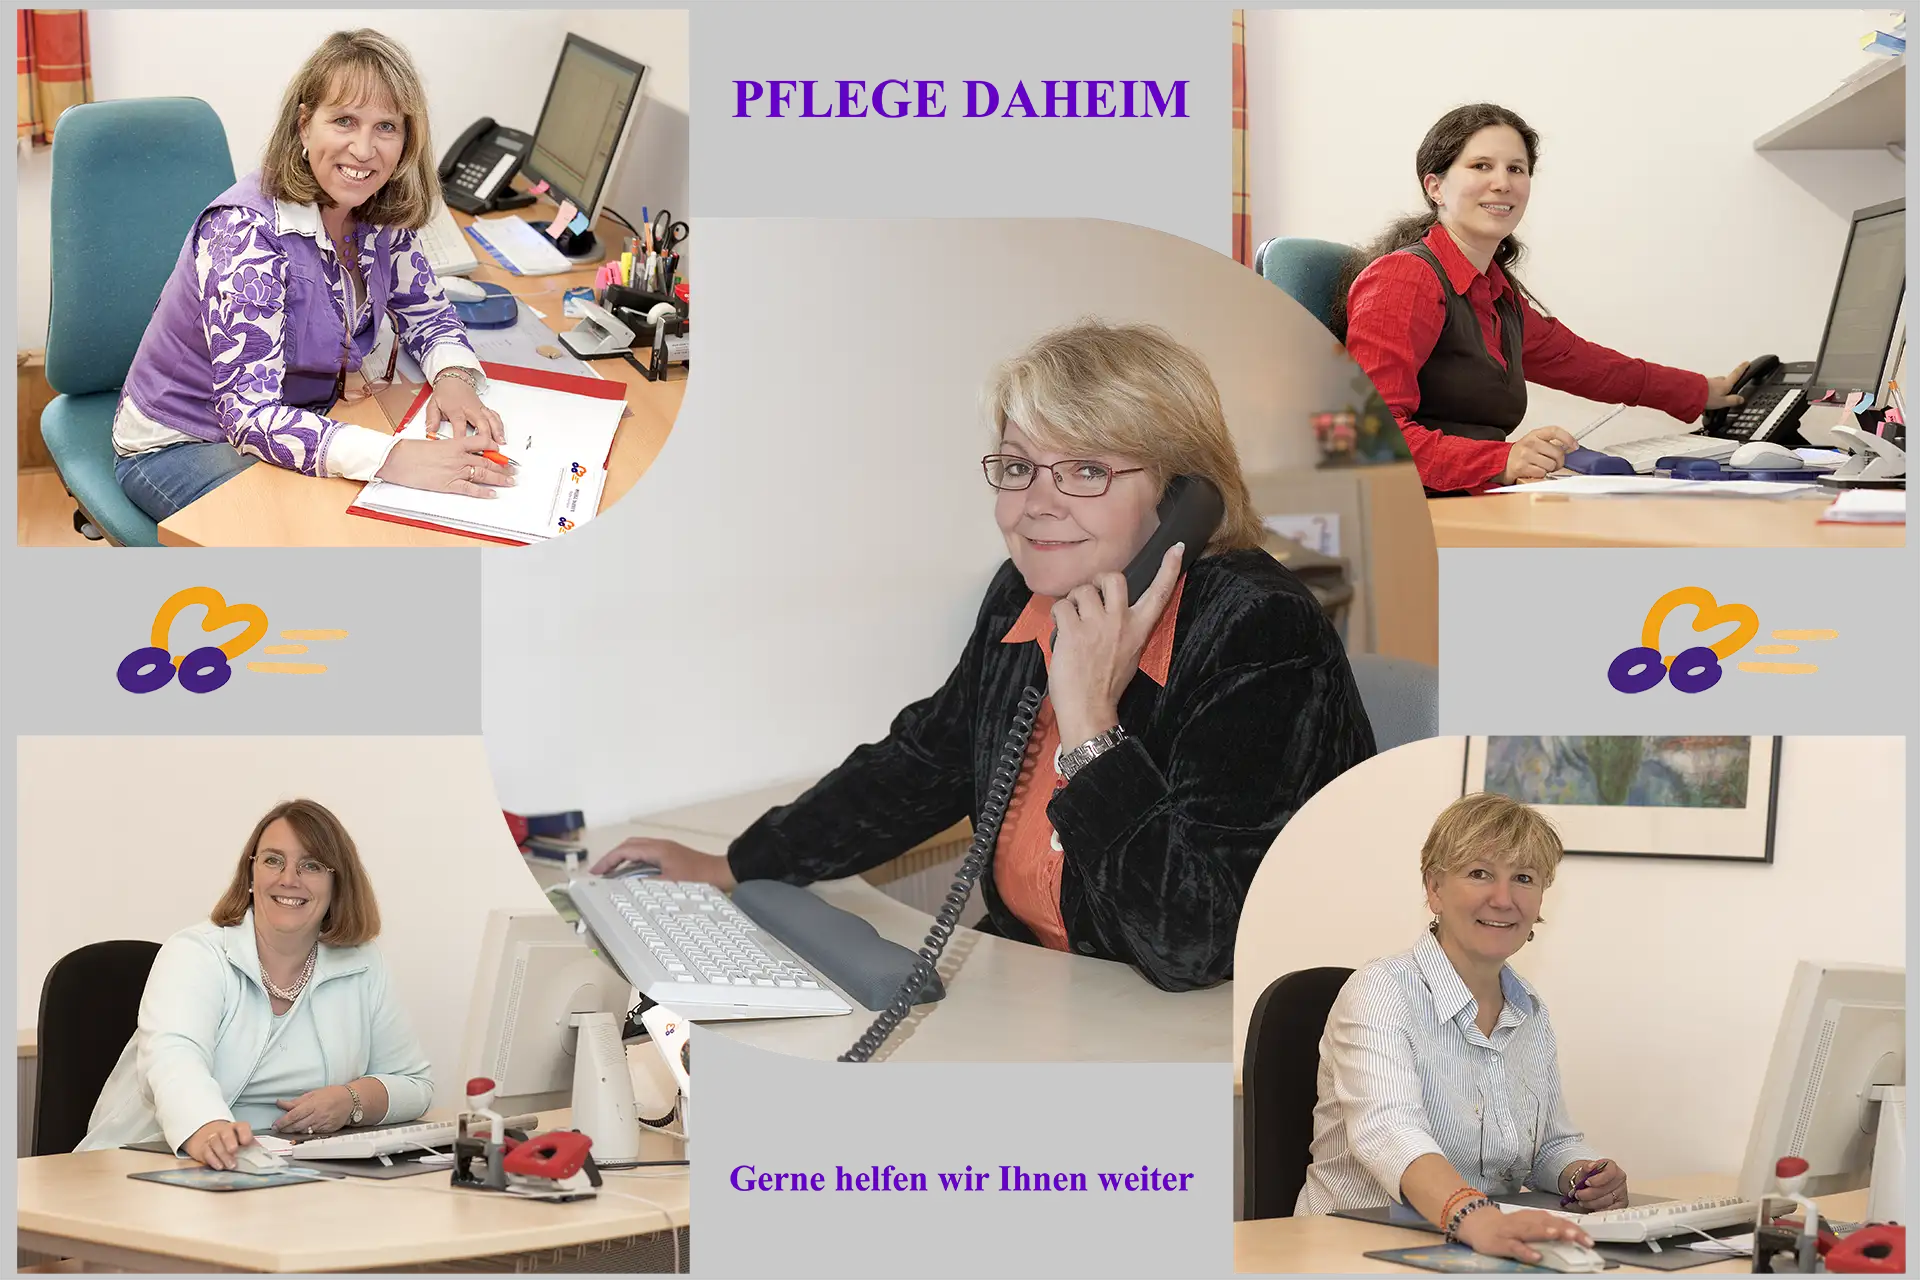 Fotomontage mit 5 Portraits von Persoonen bei der Arbeit im Büro: In der Mitte die Pflegedienstleiterin eines ambulanten Pflegedienstes, drum herum vier Mitarbeiterinnen bei der Arbeit